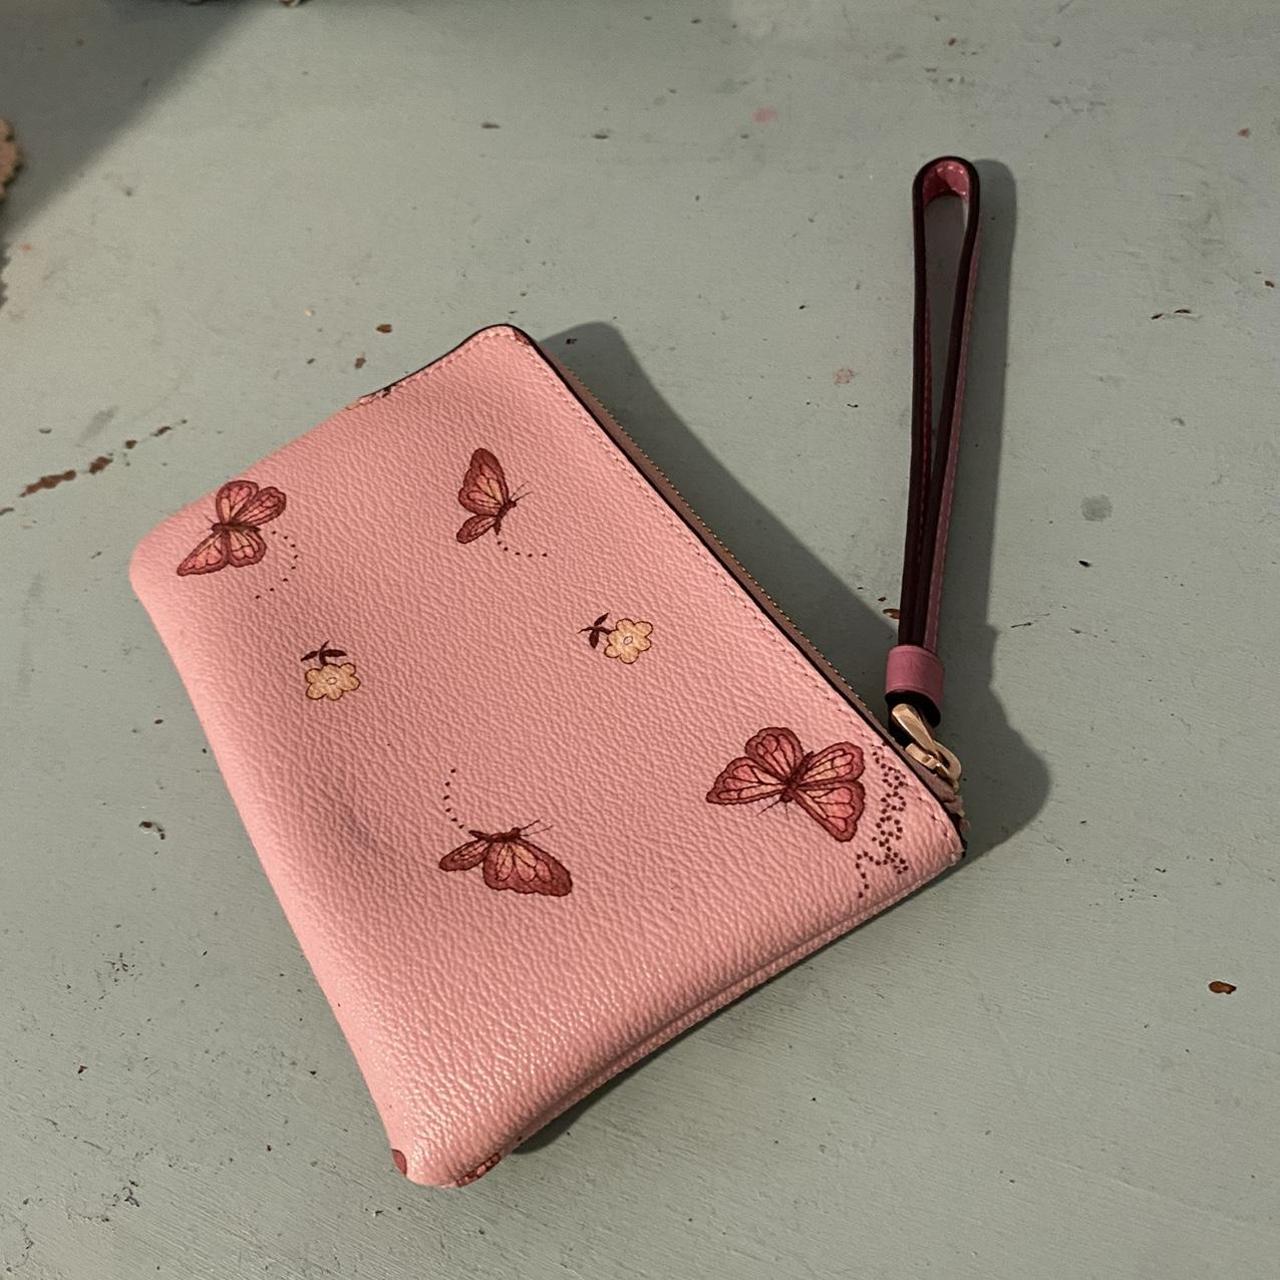 Coach Women's Pink Wallet-purses (2)